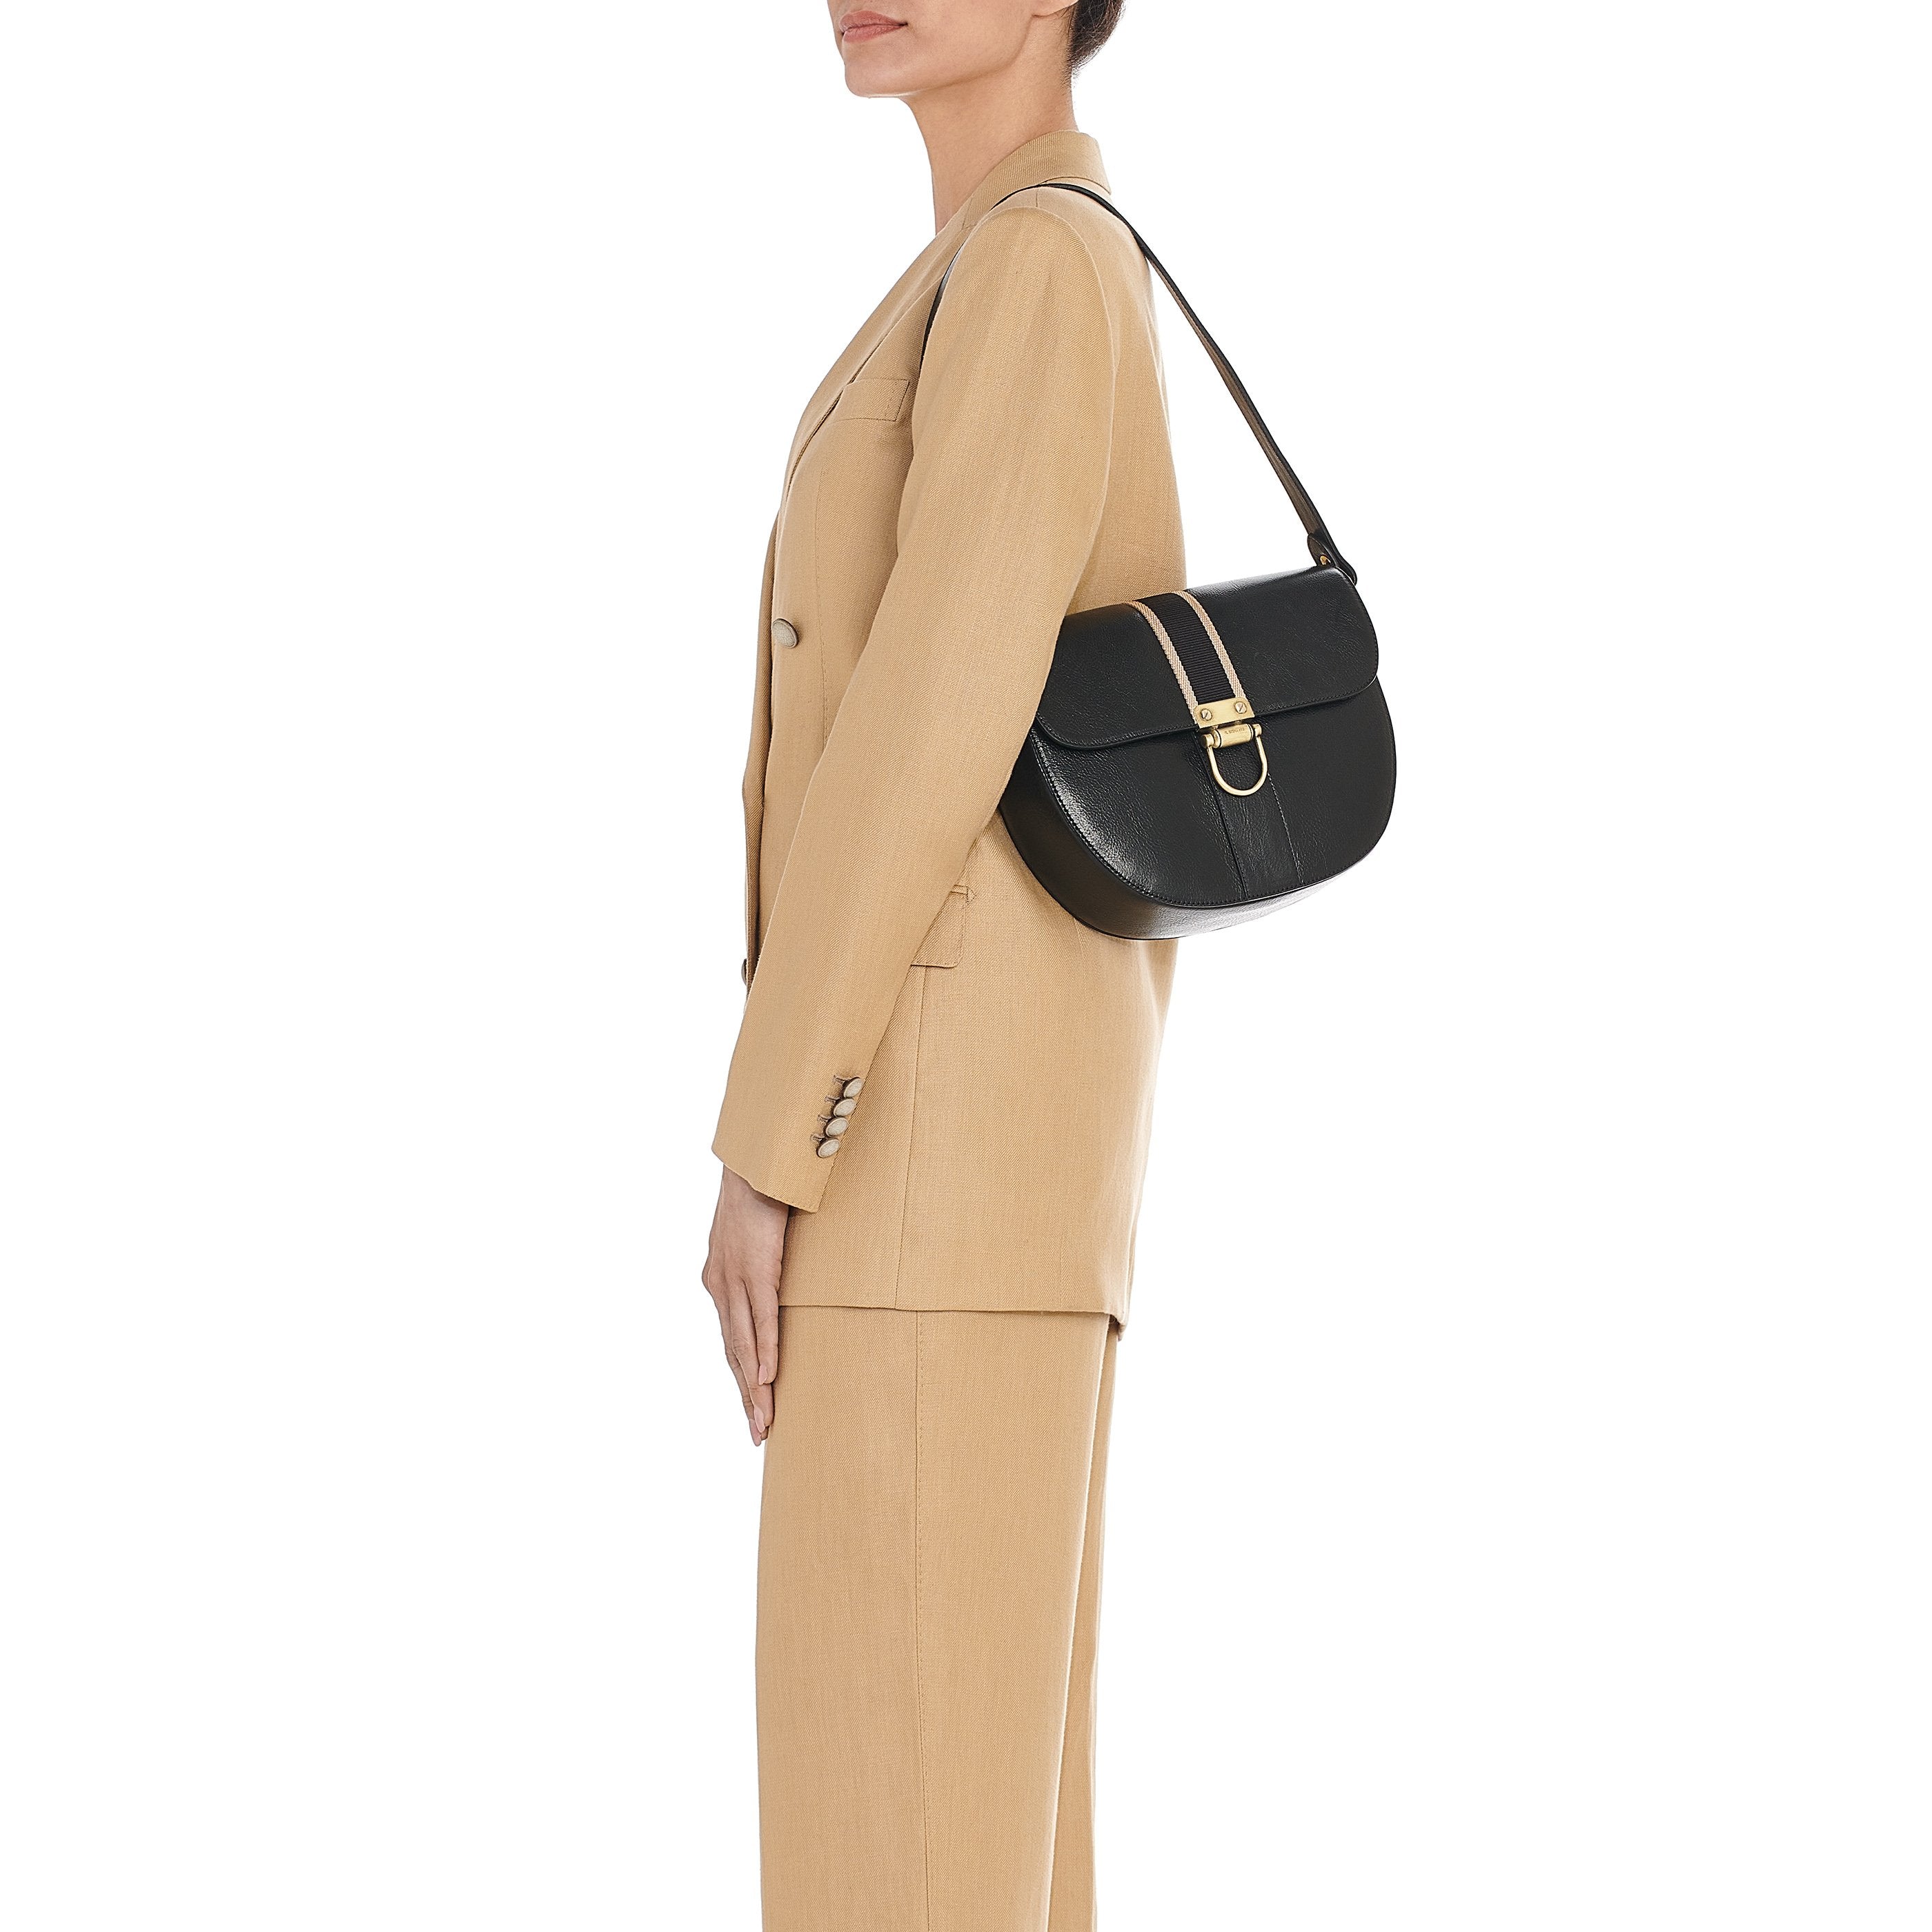 Solaria | Women's shoulder bag in leather color black